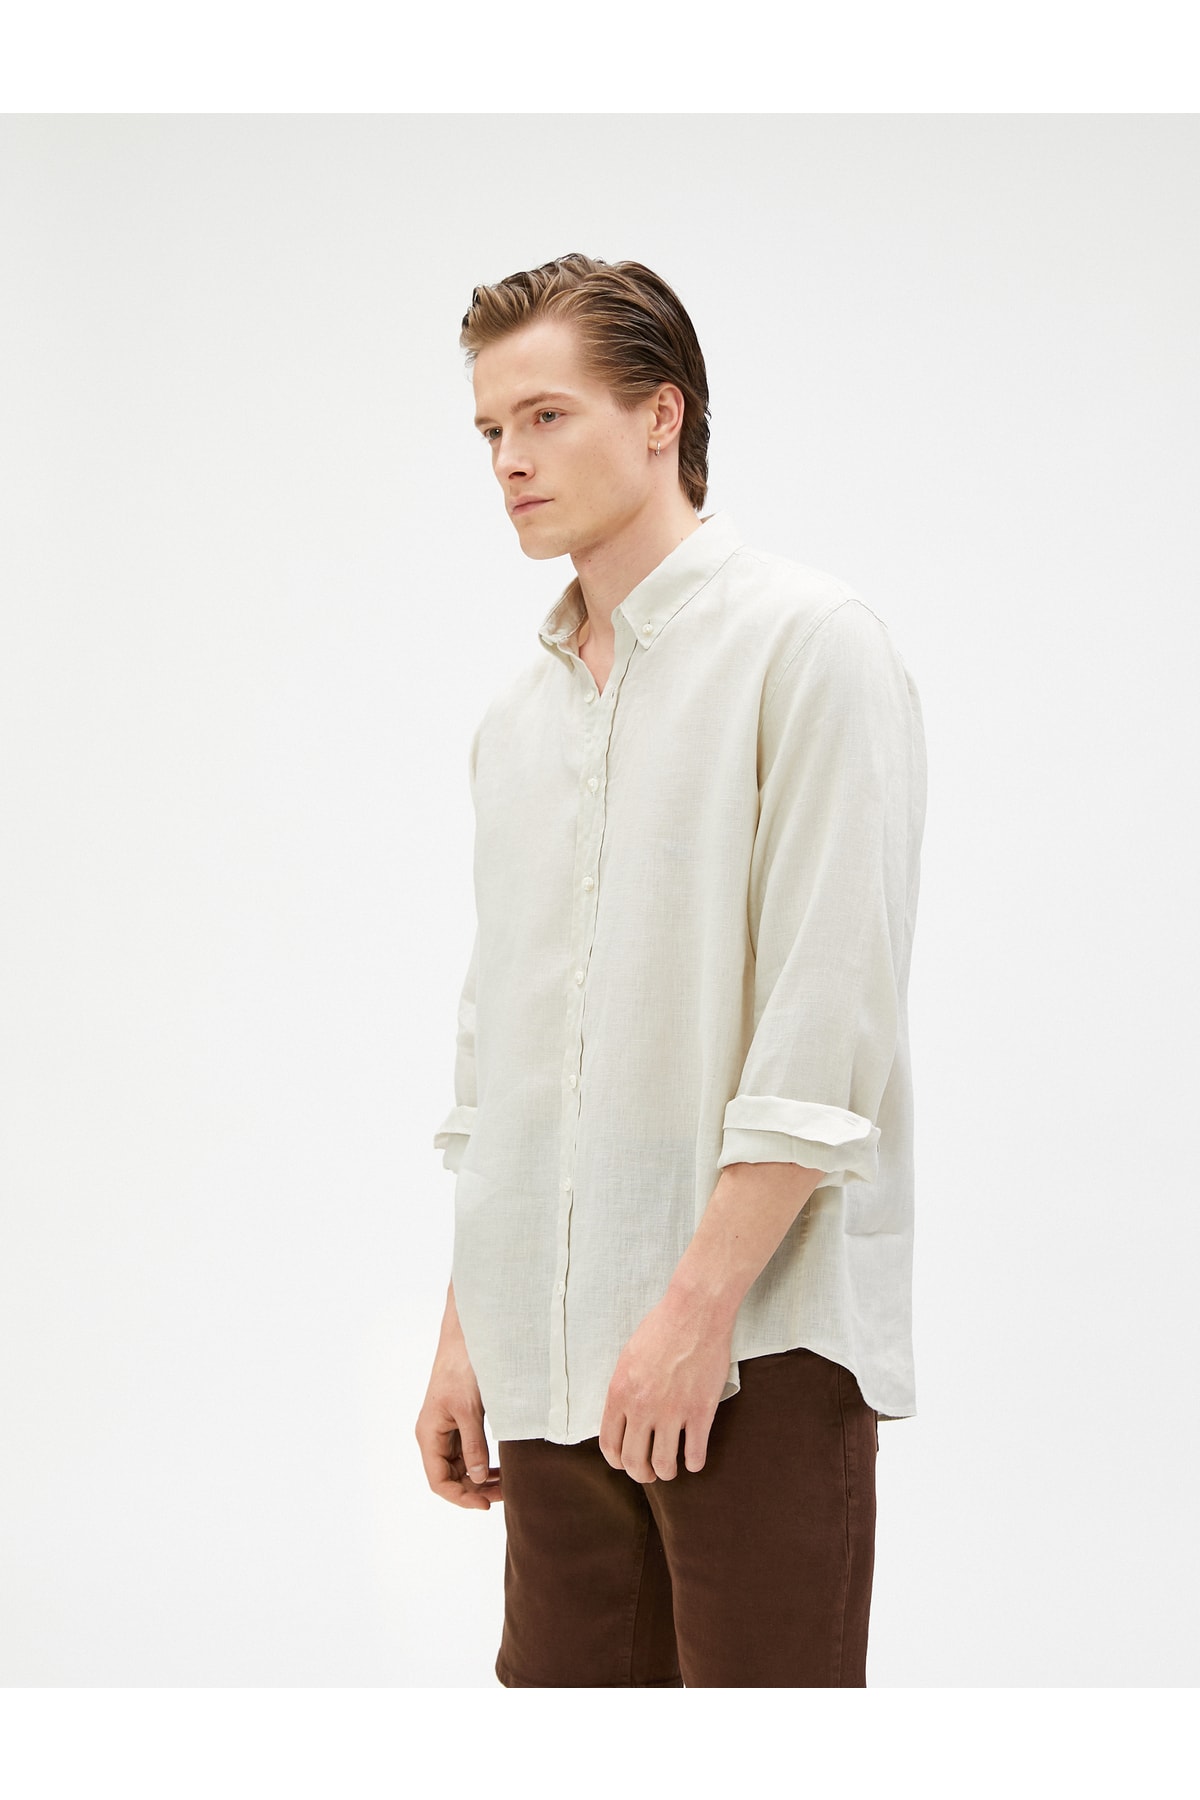 Koton Linen Shirt Classic Collar Buttoned Long Sleeve